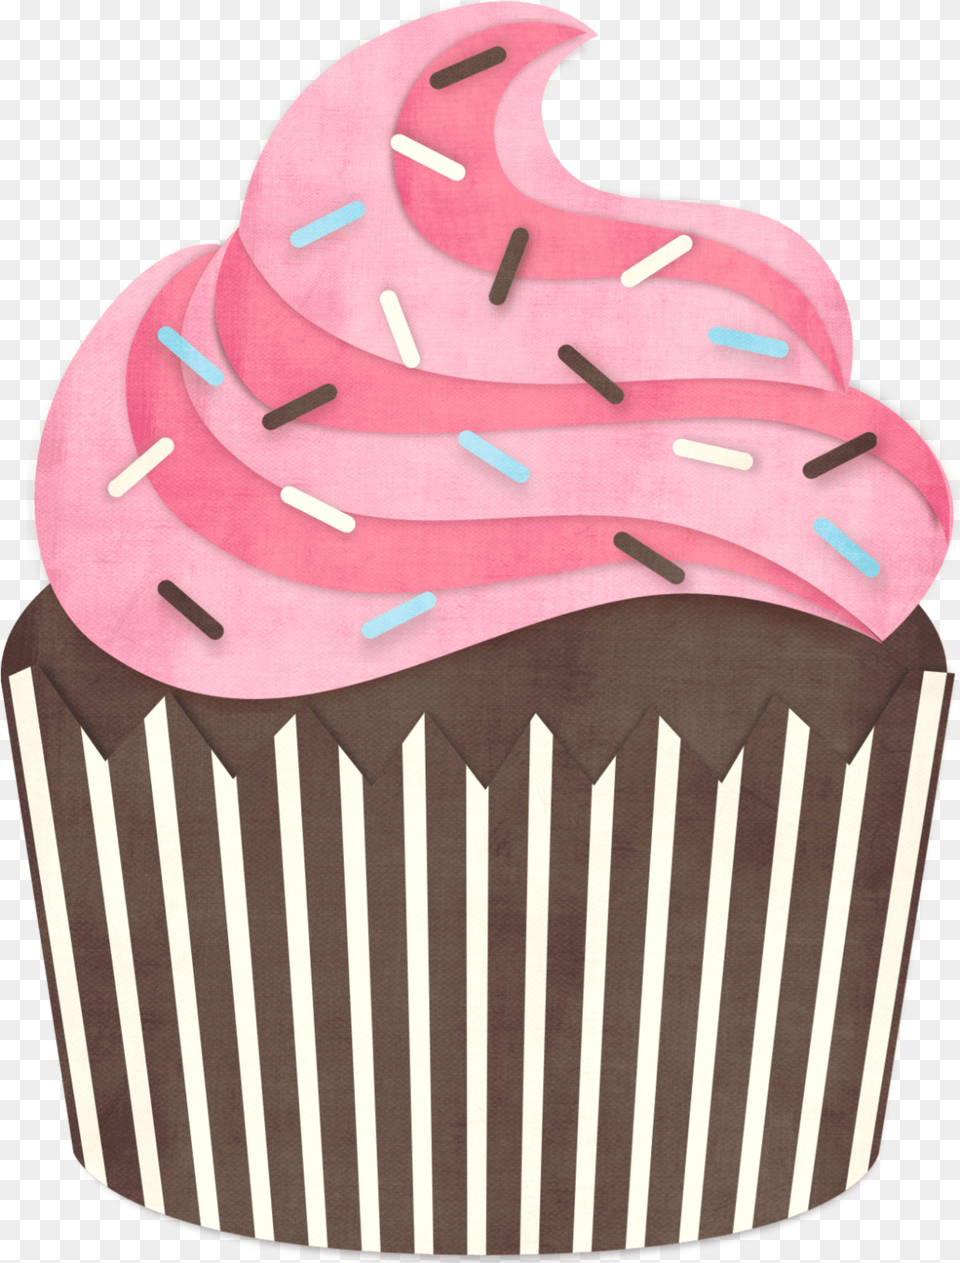 Lindos E Fofos Cupcakes Em Mini Cupcake, Cake, Cream, Dessert, Food Png Image